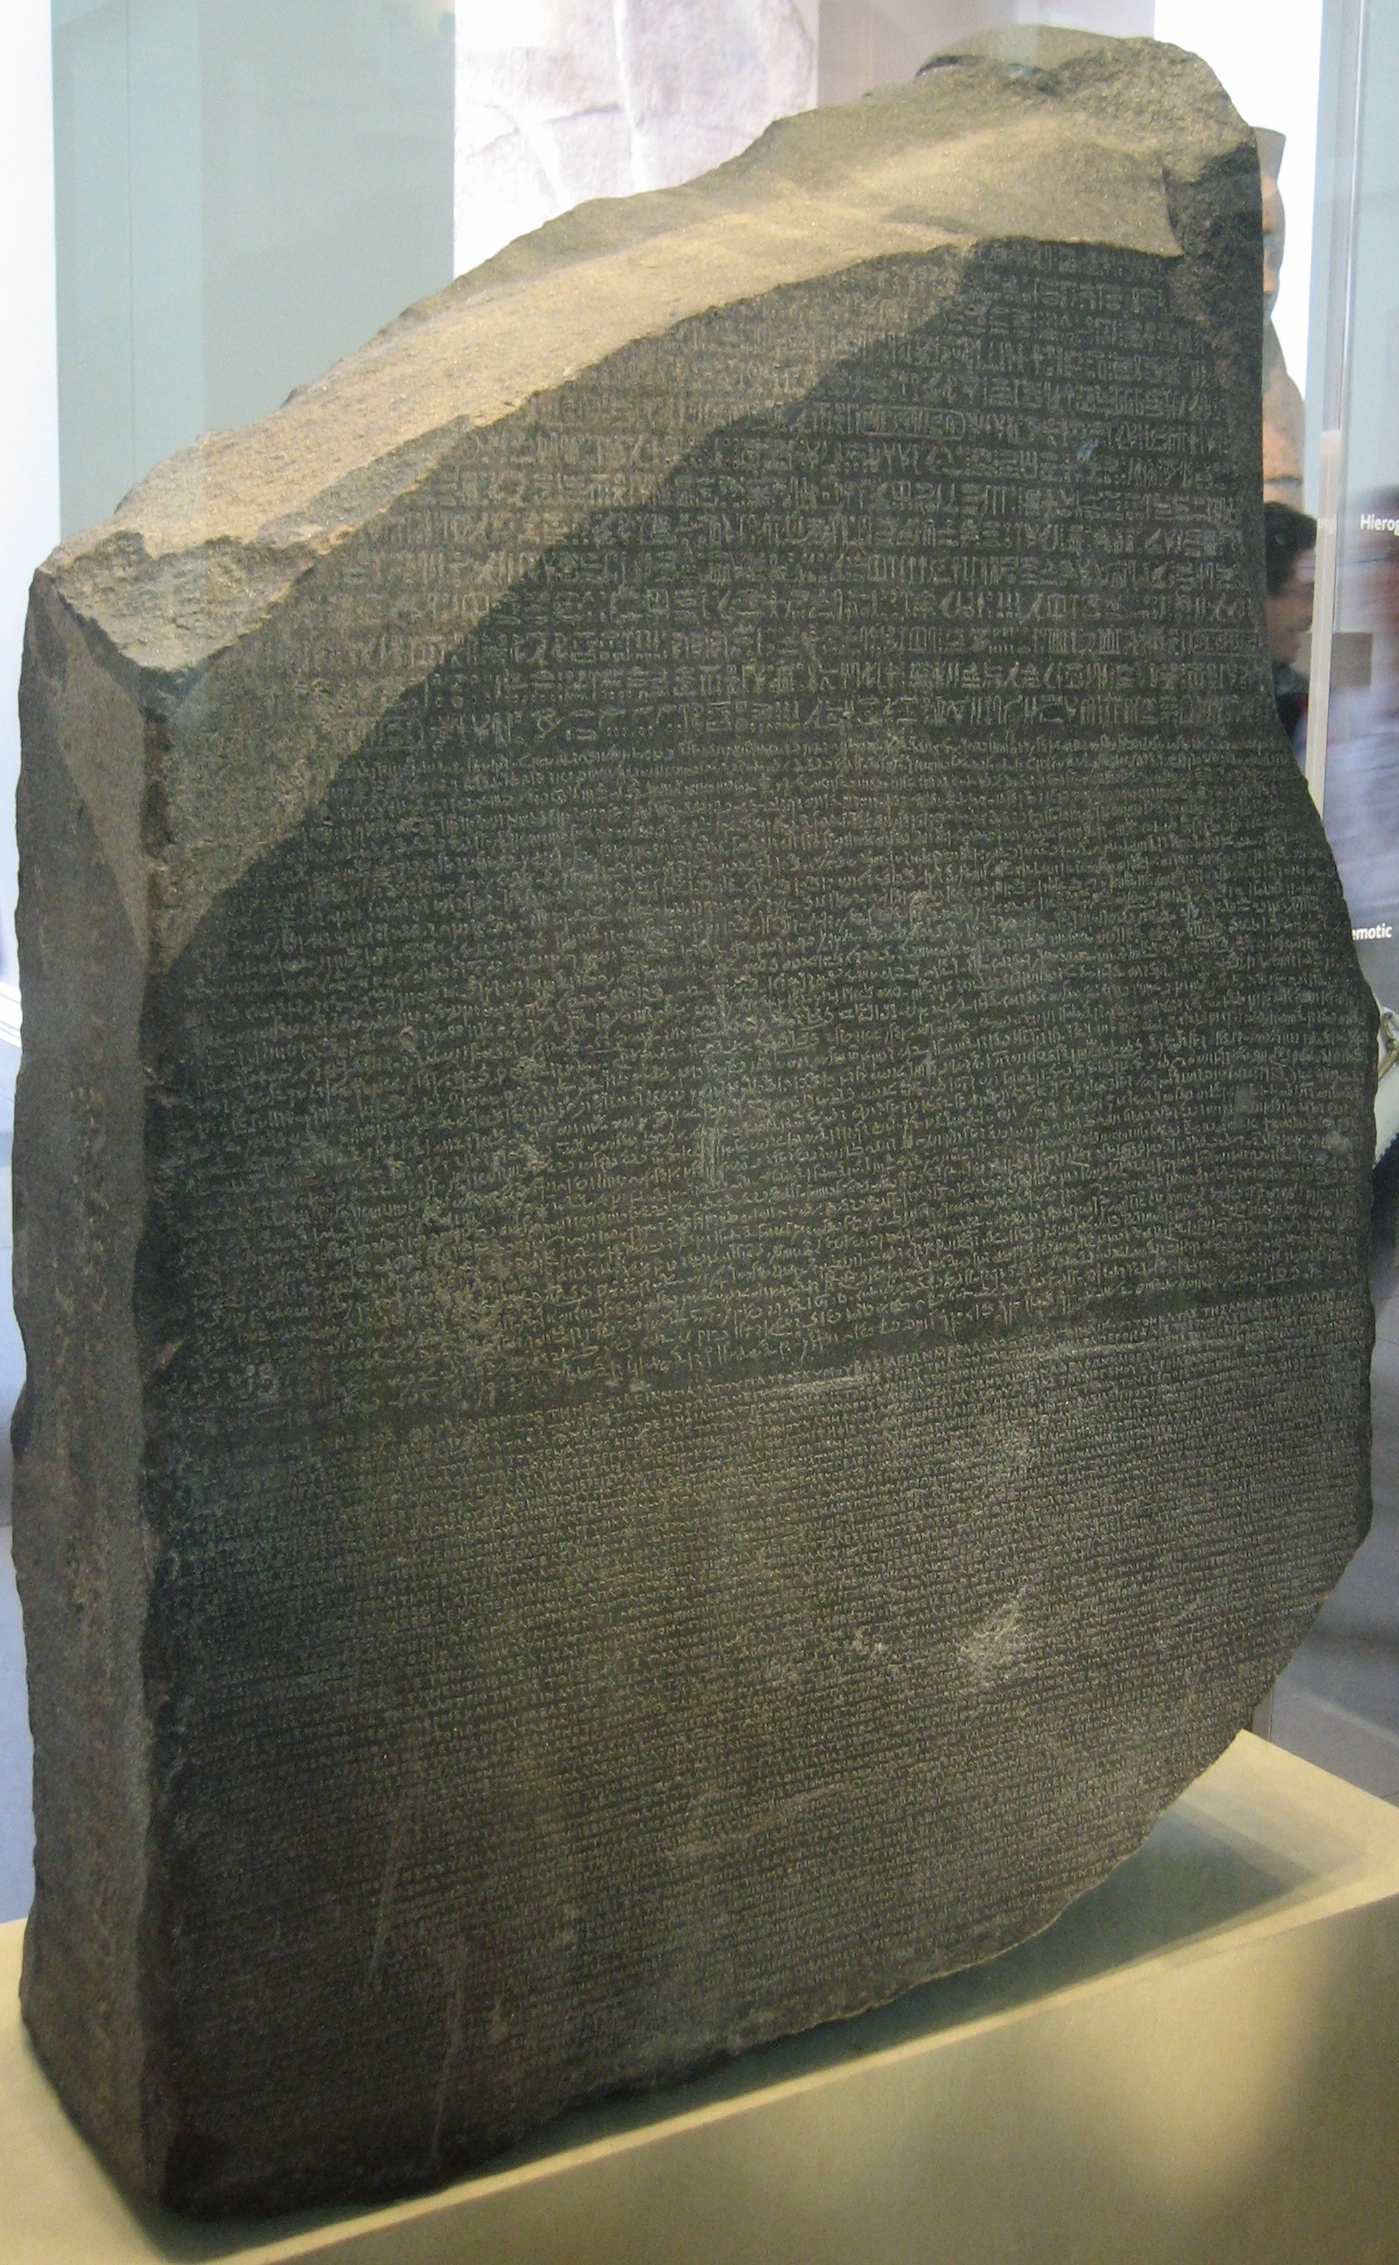 Der Stein von Rosette im British Museum. Foto: Olaf Herrmann, Wikipedia, lizenzfrei